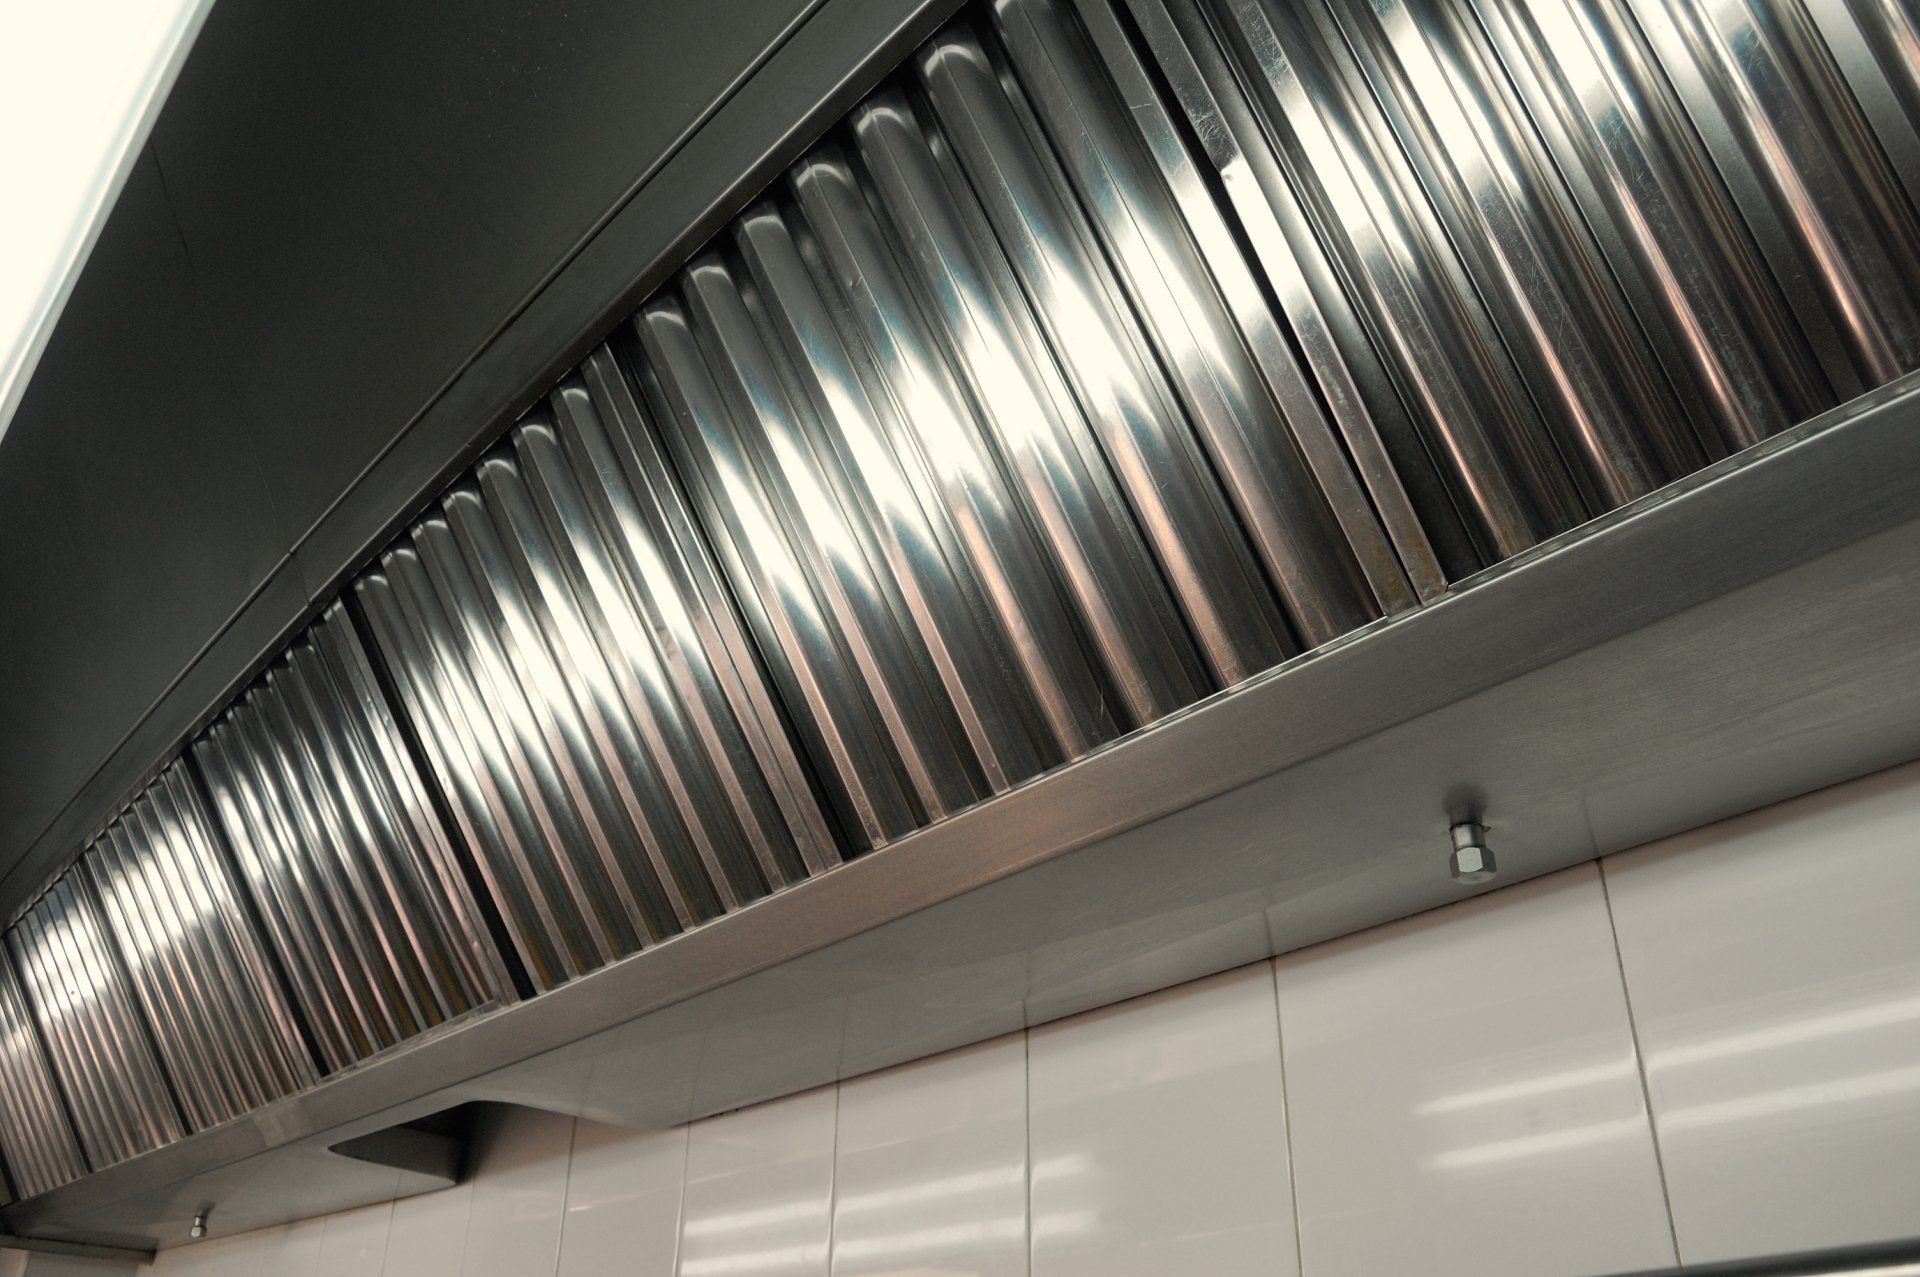 Une hotte aspirante en acier inoxydable est suspendue au plafond d une cuisine.